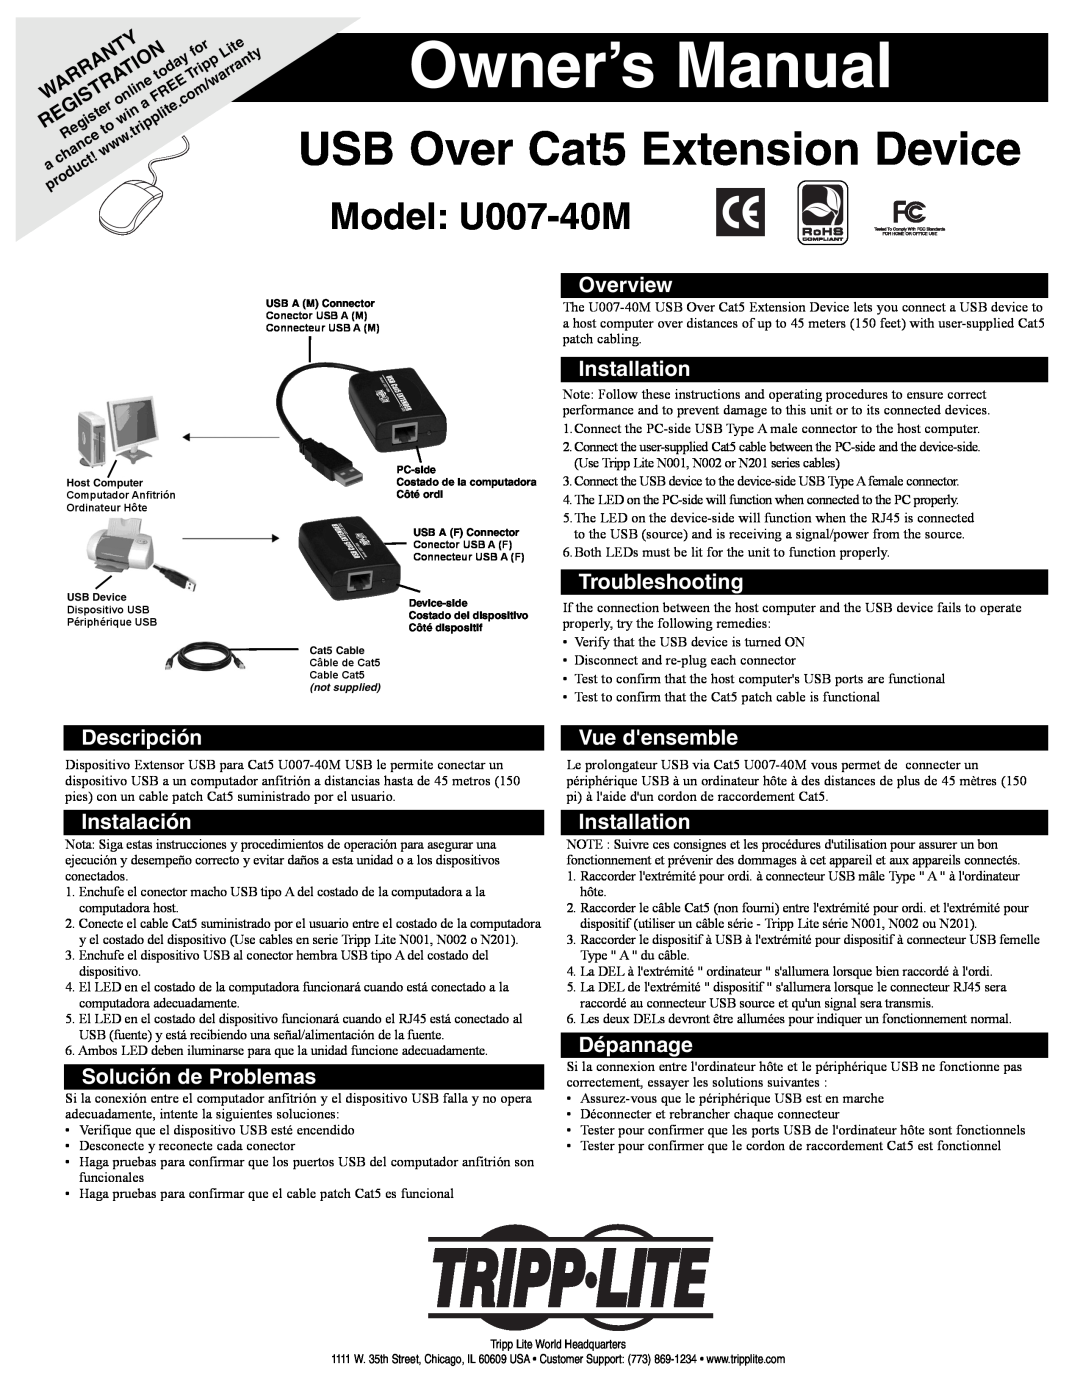 Tripp Lite U007-40M owner manual Overview, Installation, Troubleshooting, Descripción, Vue densemble, Instalación 